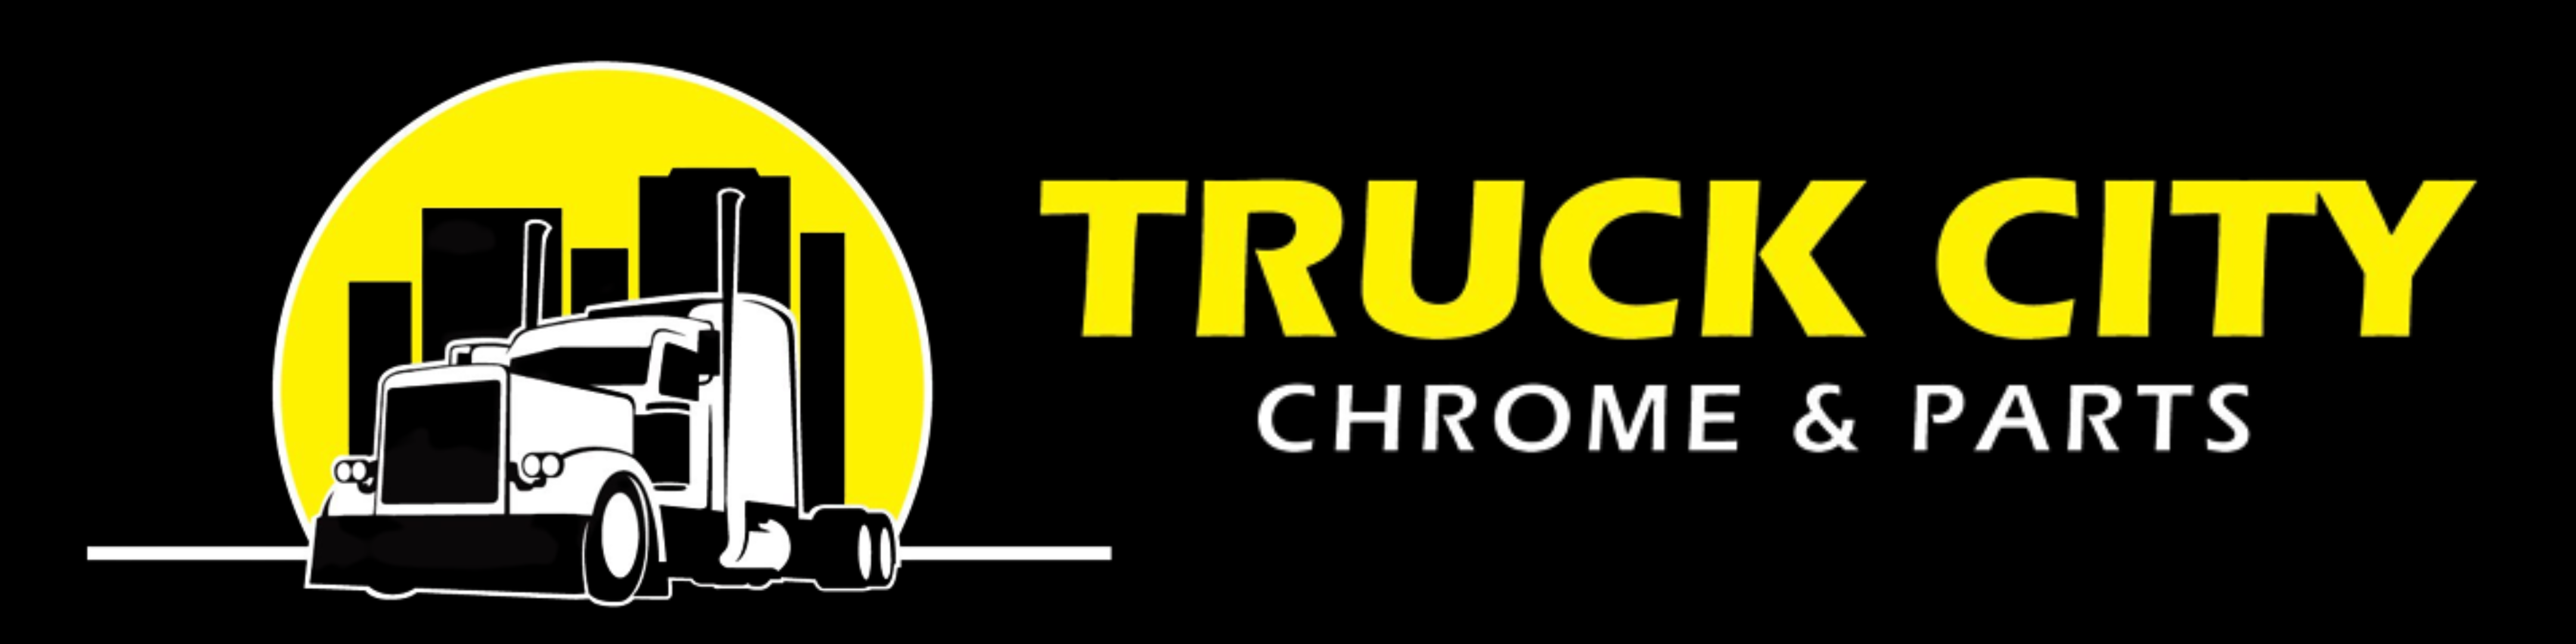 Truck City Chrome & Parts